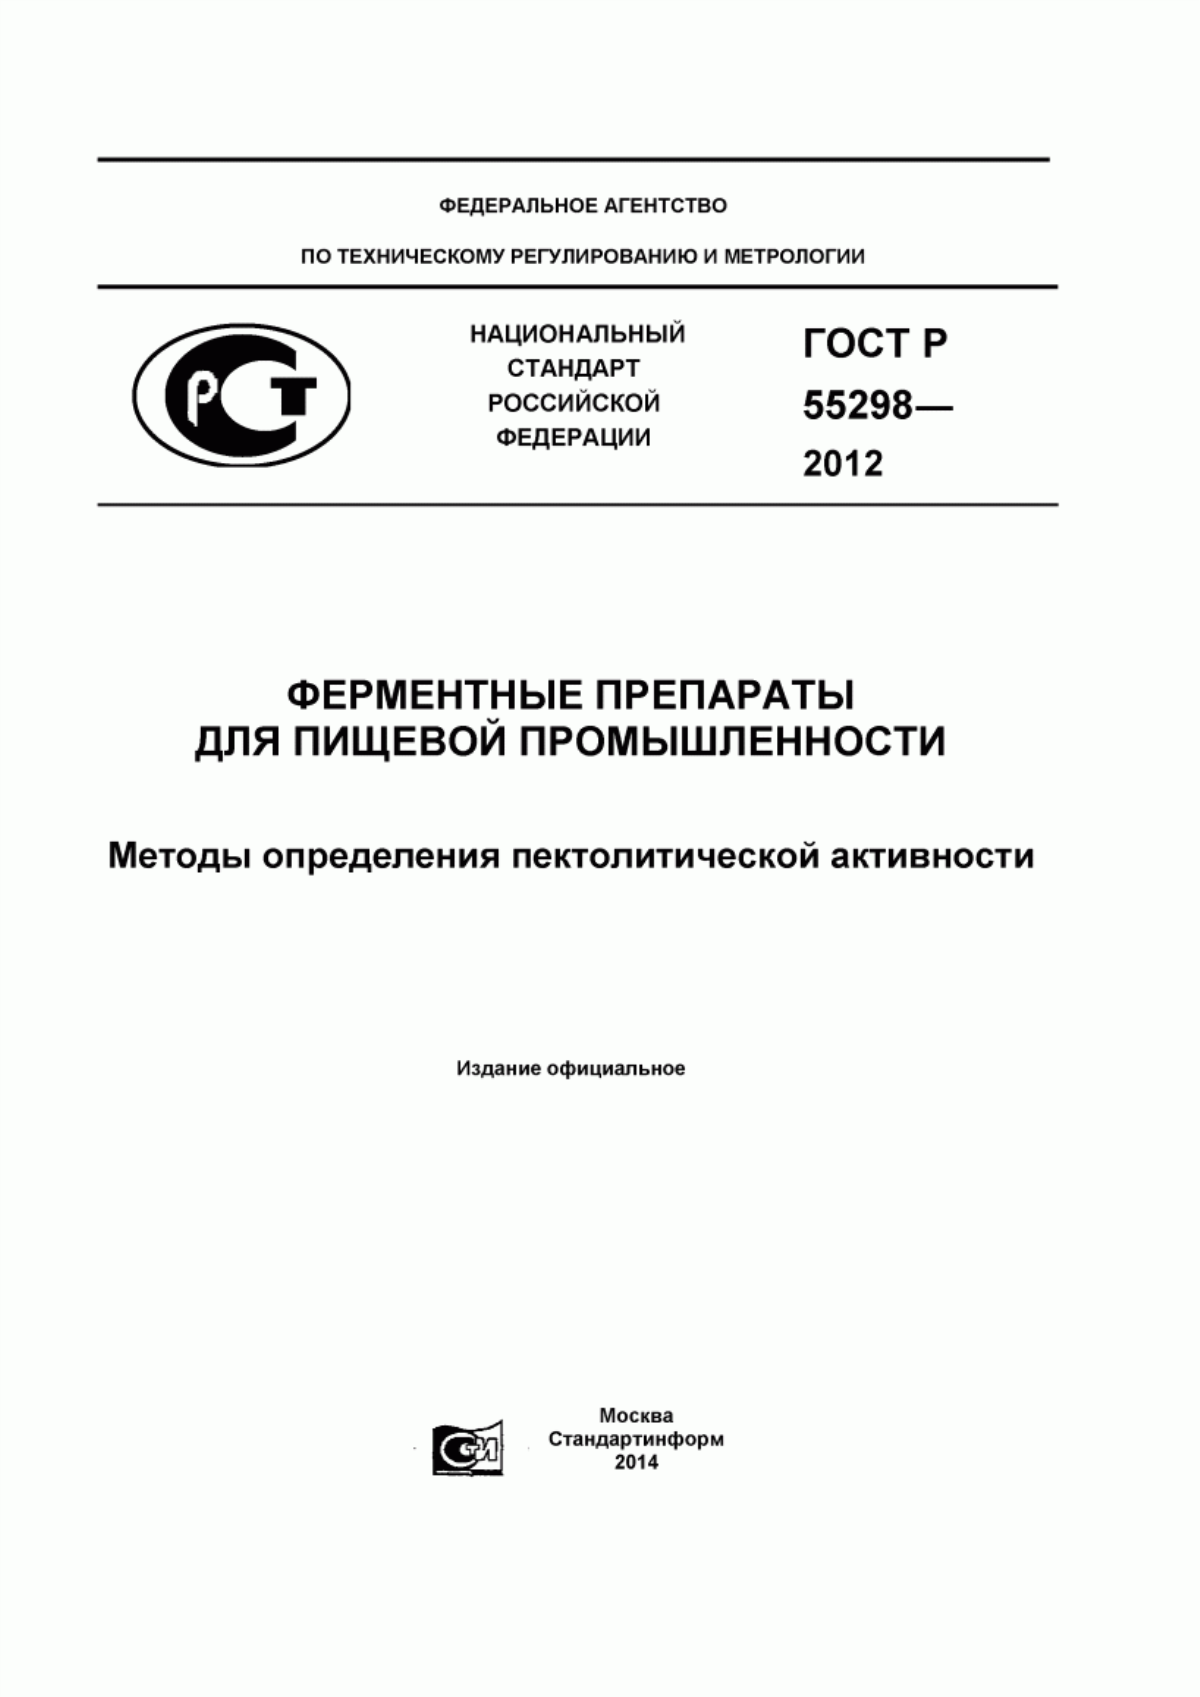 ГОСТ Р 55298-2012 Ферментные препараты для пищевой промышленности. Методы определения пектолитической активности